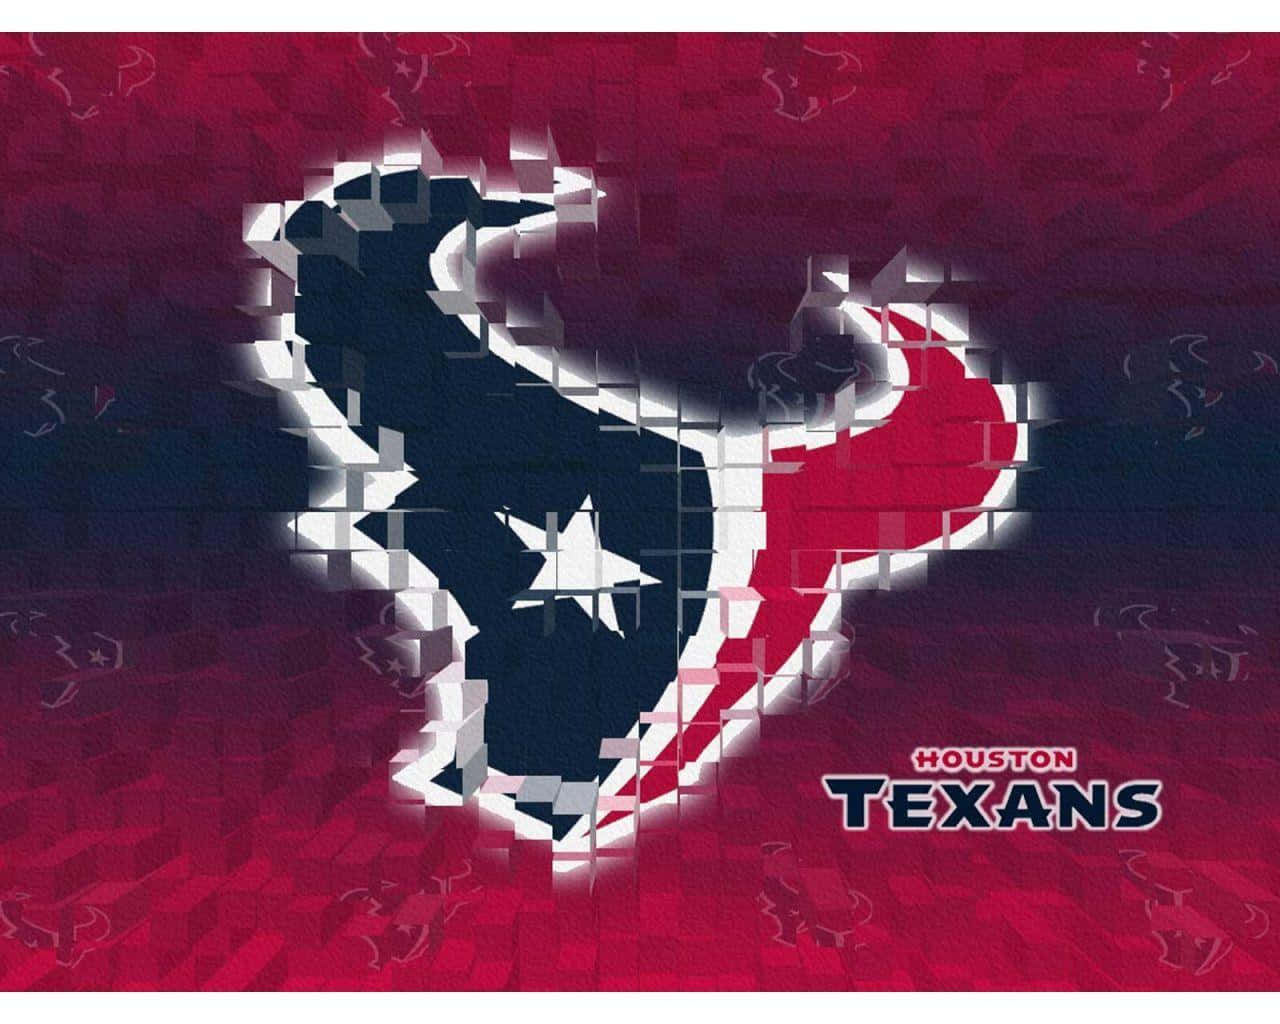 Ikoniskahouston Texans-logotypen. Wallpaper